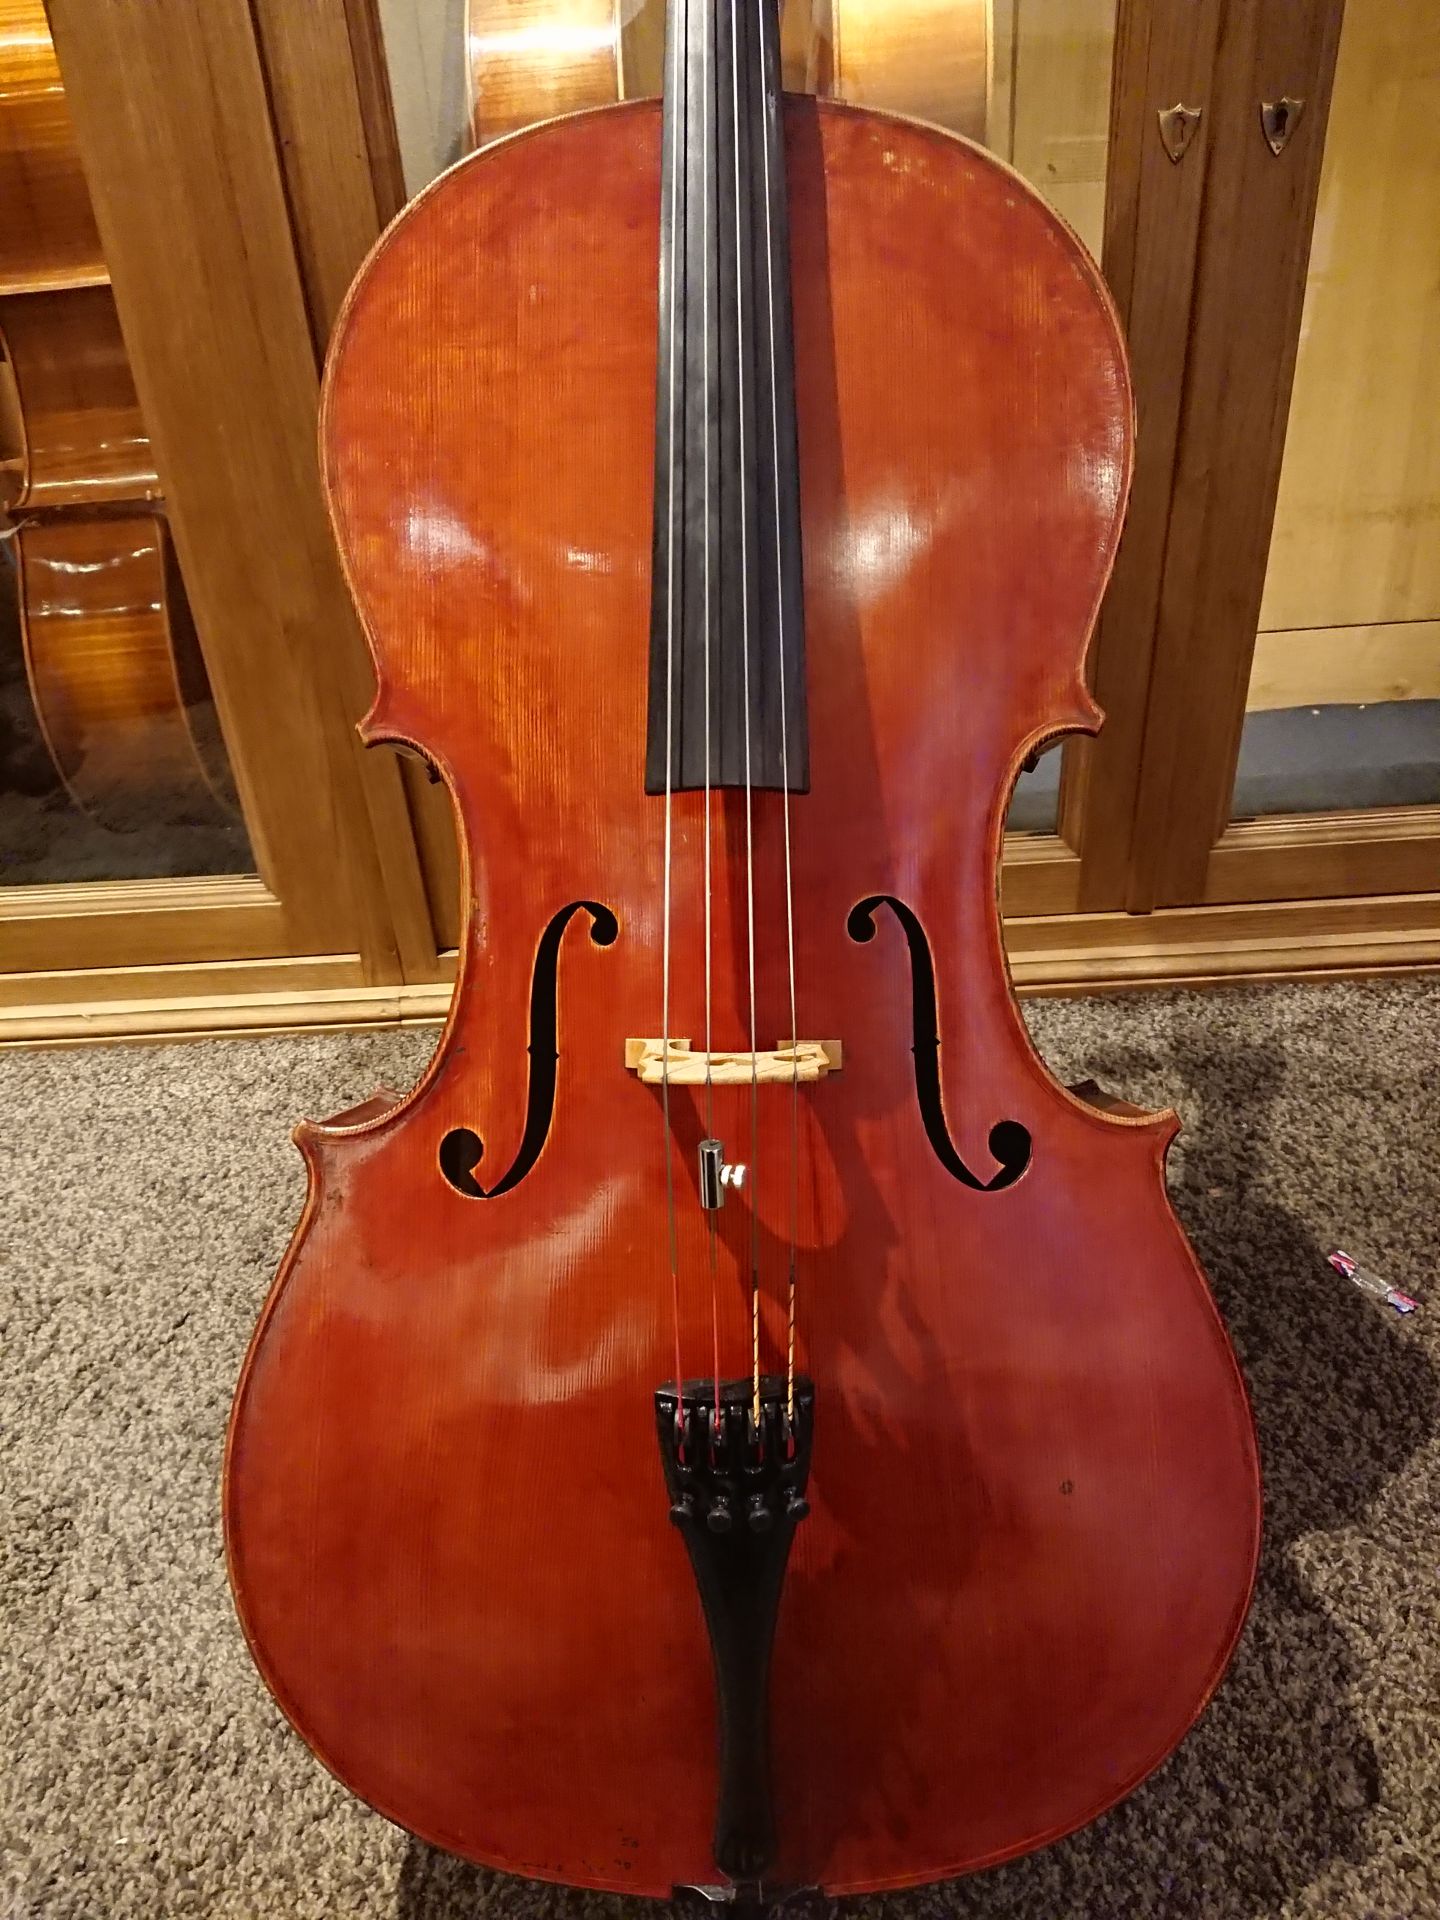 *美食の街：Lyon（リヨン）で入手した、絶品サウンドのモダンチェロがご用意できました！ 弊社ブログでご紹介させて頂きました、フランス・リヨンで買い付けたモダンチェロが遂に入荷しました！]]名器：Antonio Stradivari 1710年の作品をもとに、フランス・Parisで製作された19世紀 […]